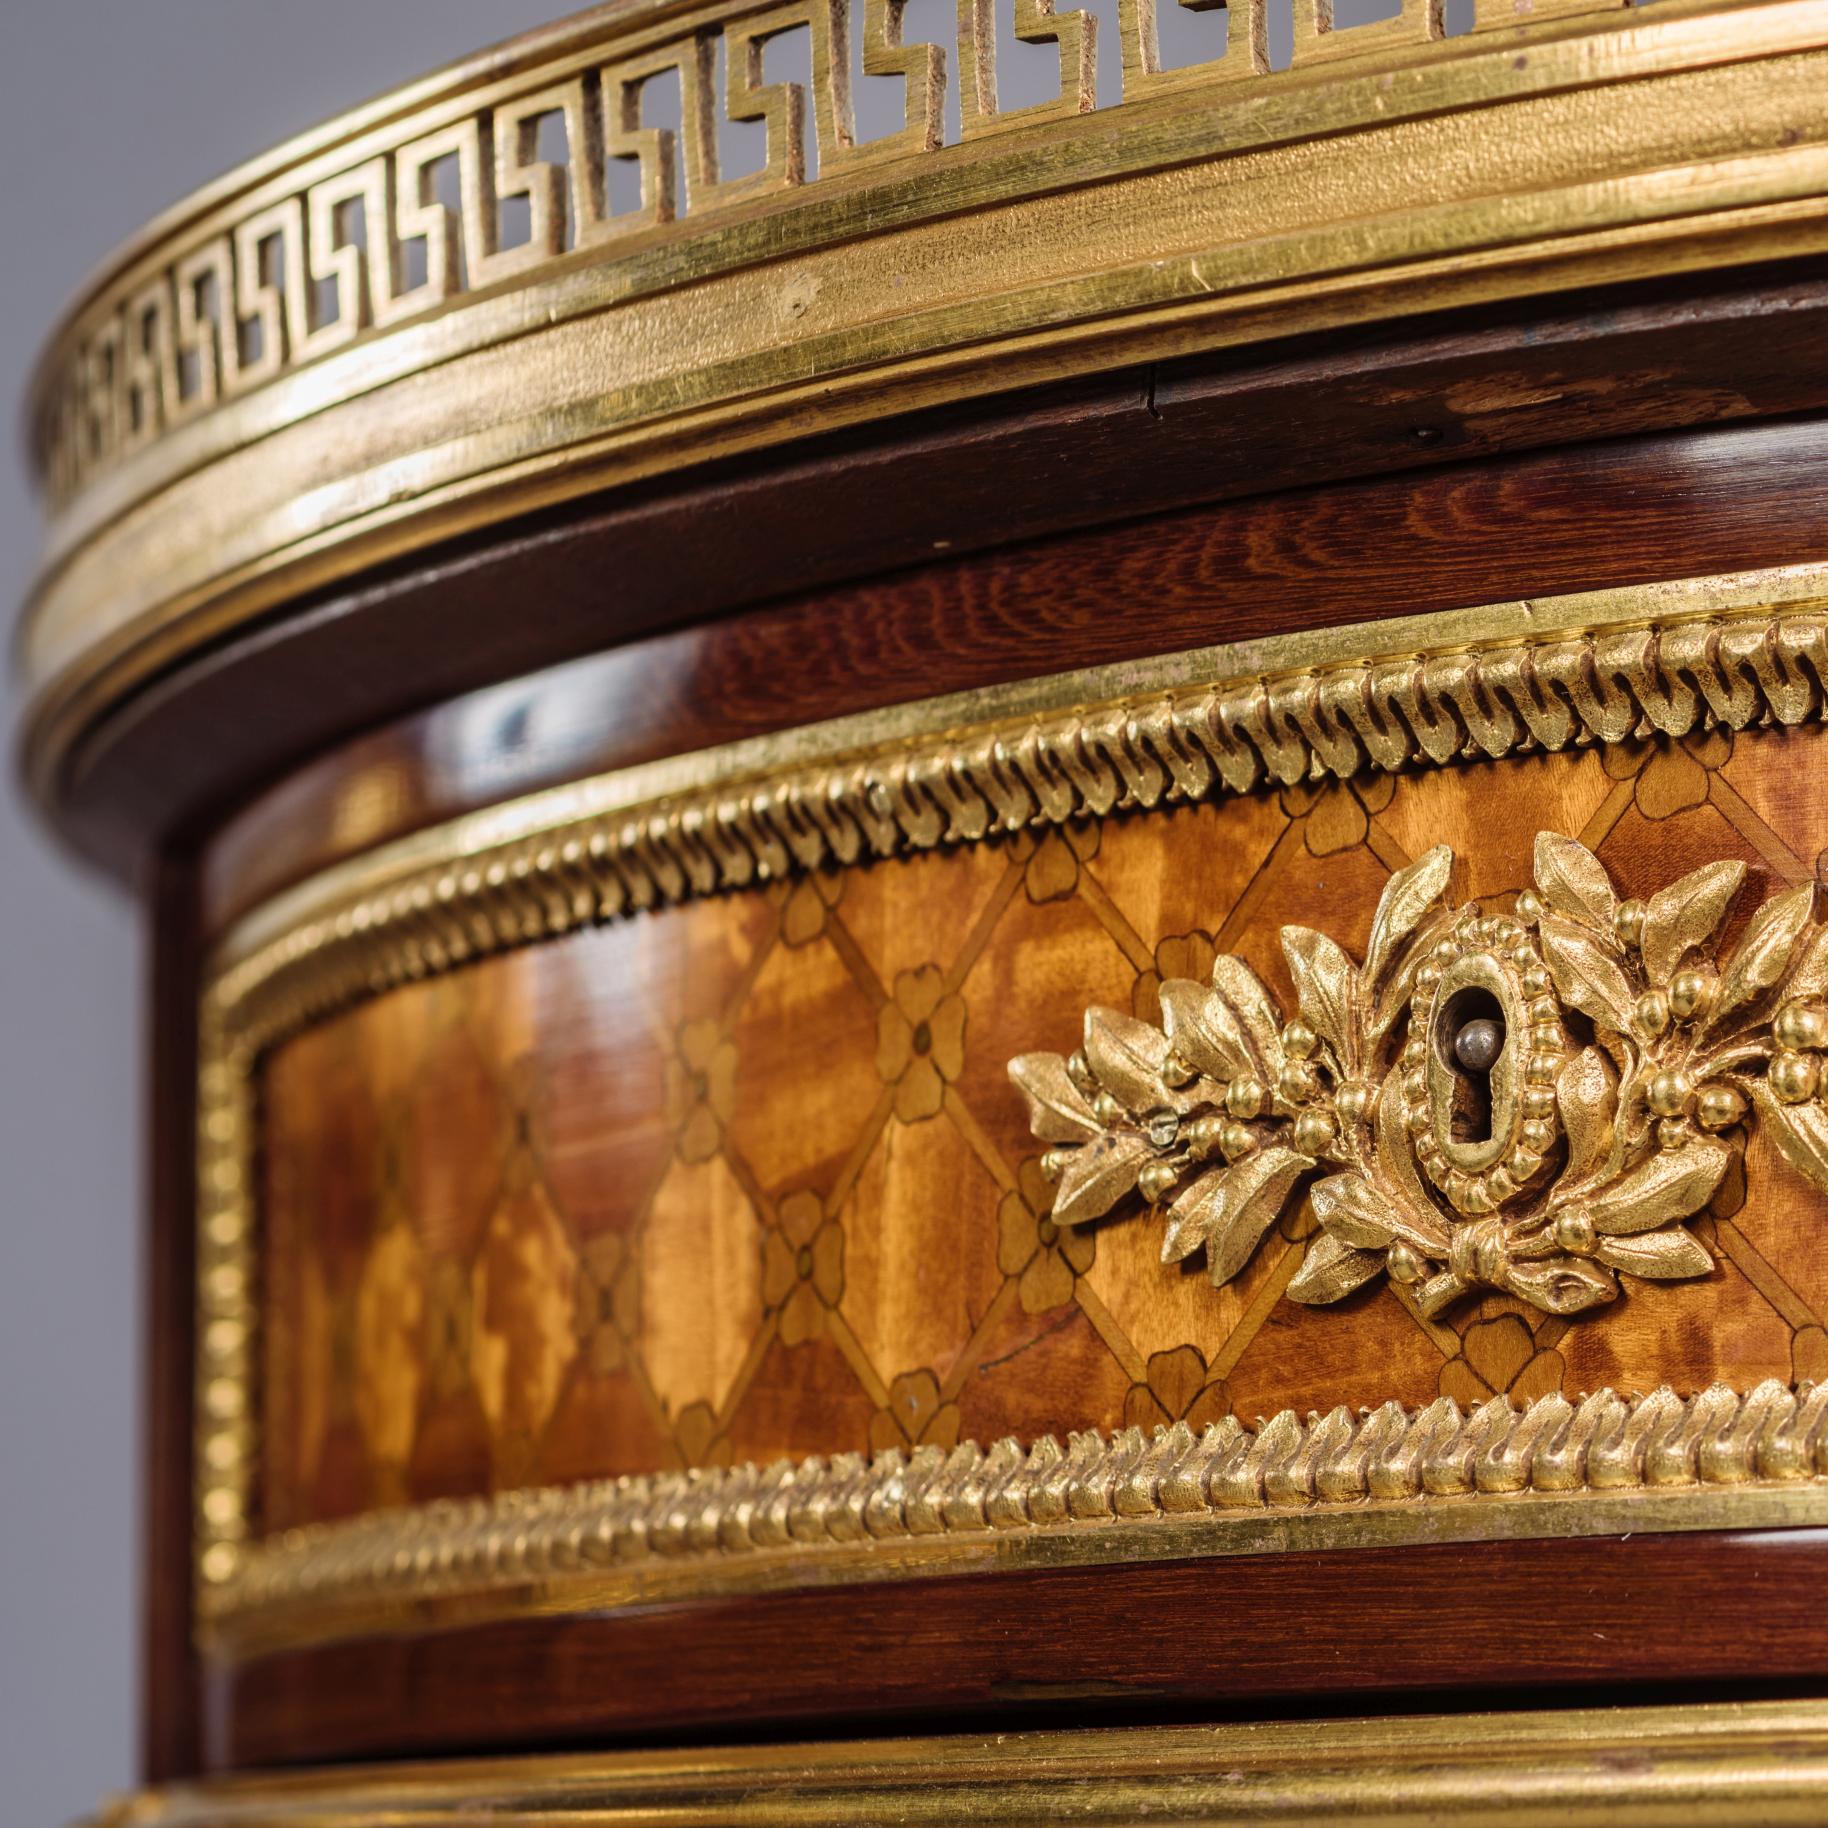 Ein seltenes Paar von vergoldeten, in Bronze gefassten Parkett-Gueridons im Stil Louis XVI.

Jeder Tisch hat eine durchbrochene Galerie aus vergoldeter Bronze mit einer Platte aus grauem Marmor über einem Gitterfries aus Parkett, das eine